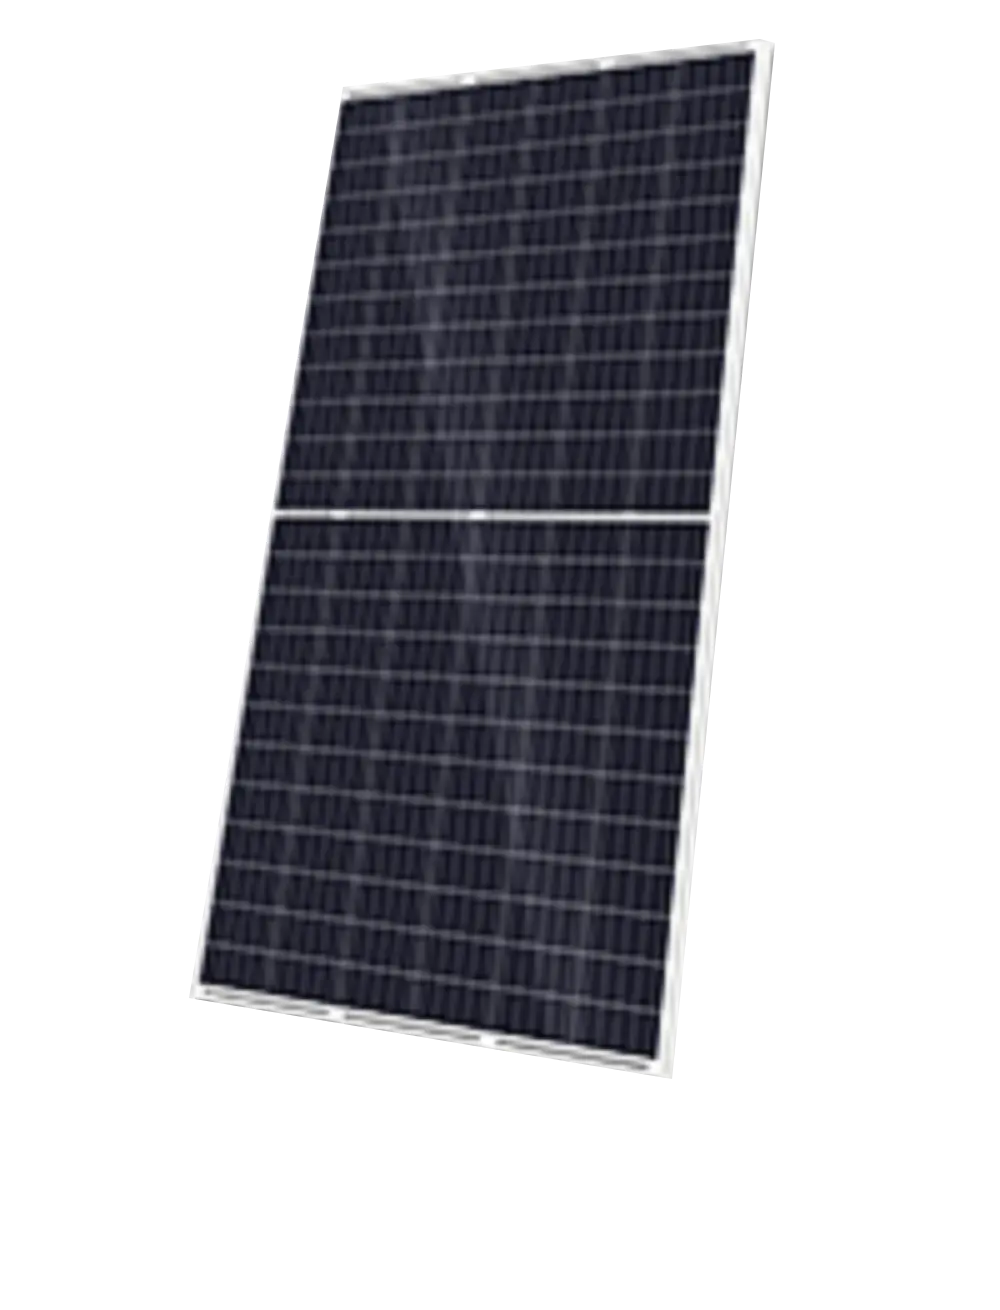 SINO GREEN Solar KuMax CS3U-360P 360W Solar Panel
